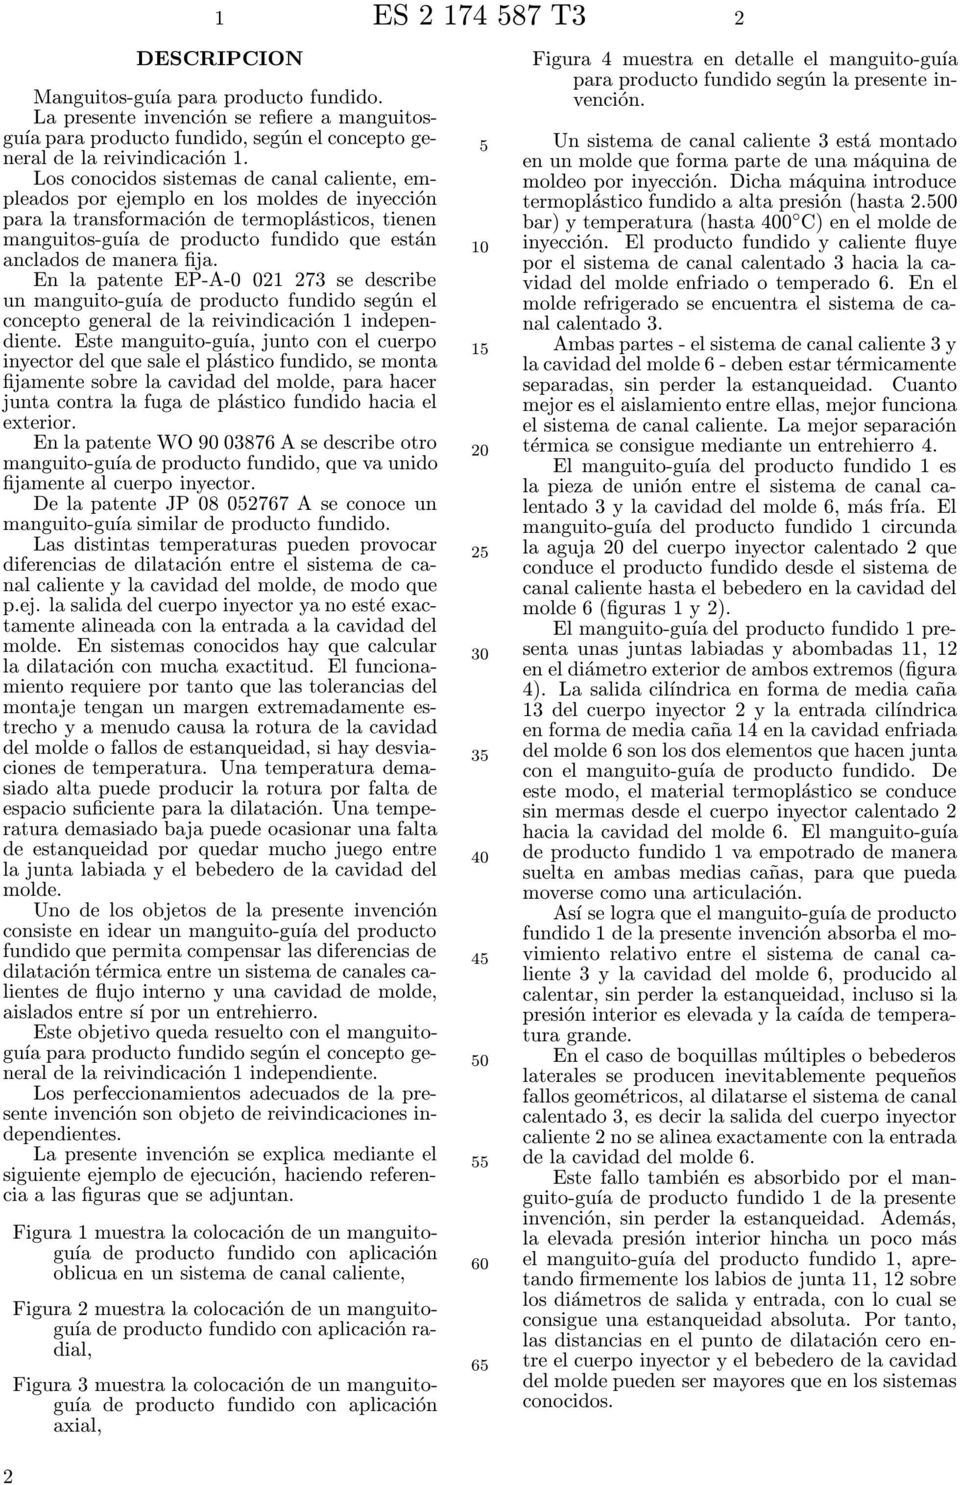 manera fija. En la patente EP-A-0 021 273 se describe un manguito-guía de producto fundido según el concepto general de la reivindicación 1 independiente.